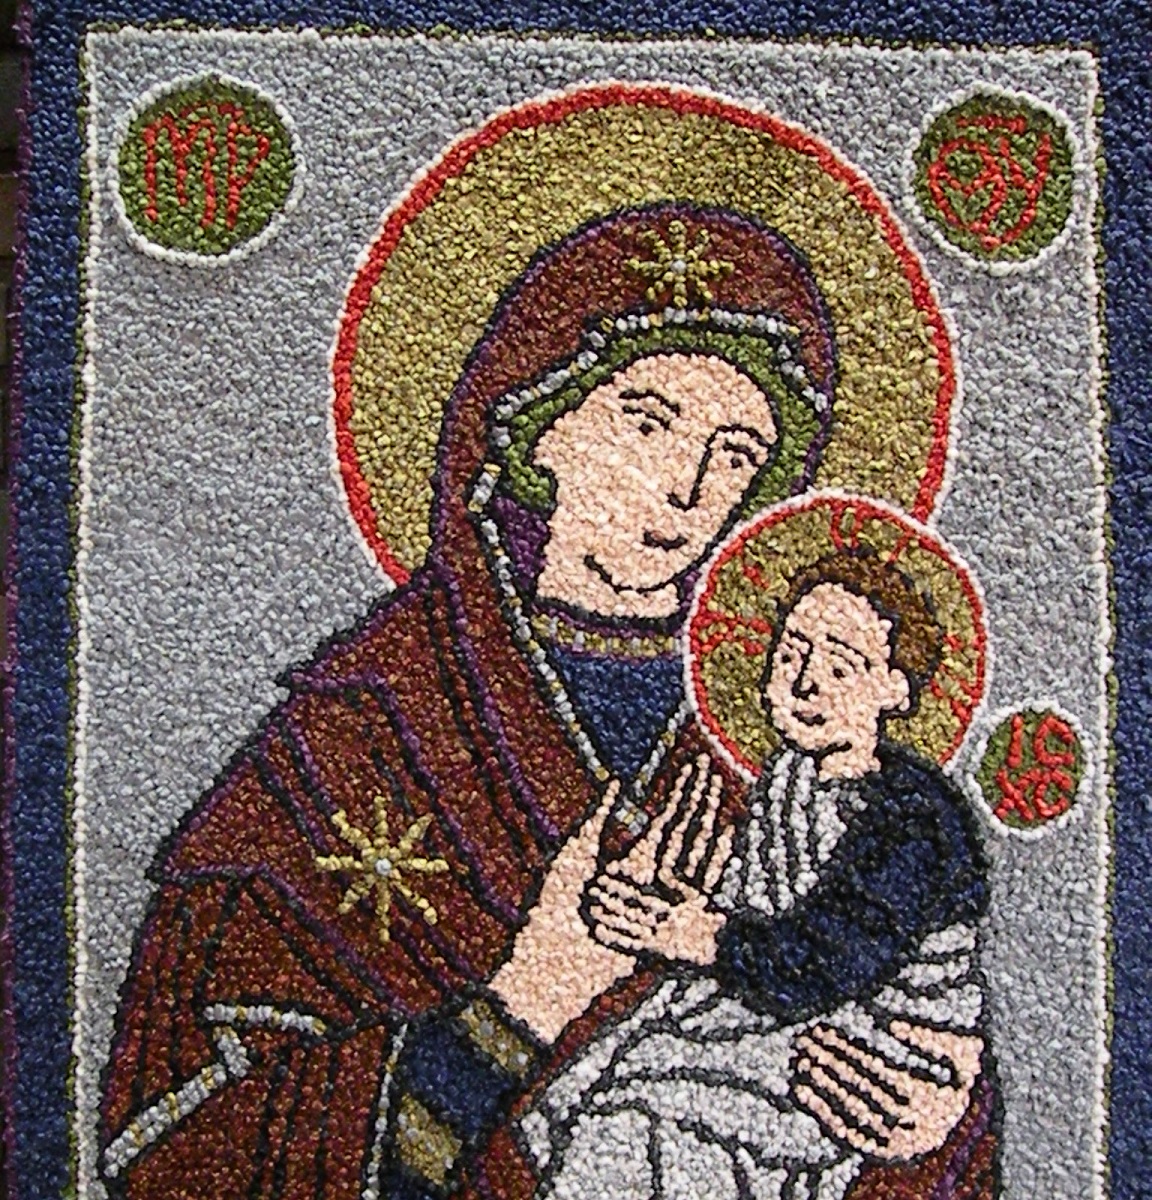 Maria sylissään Jeesus-lapsi